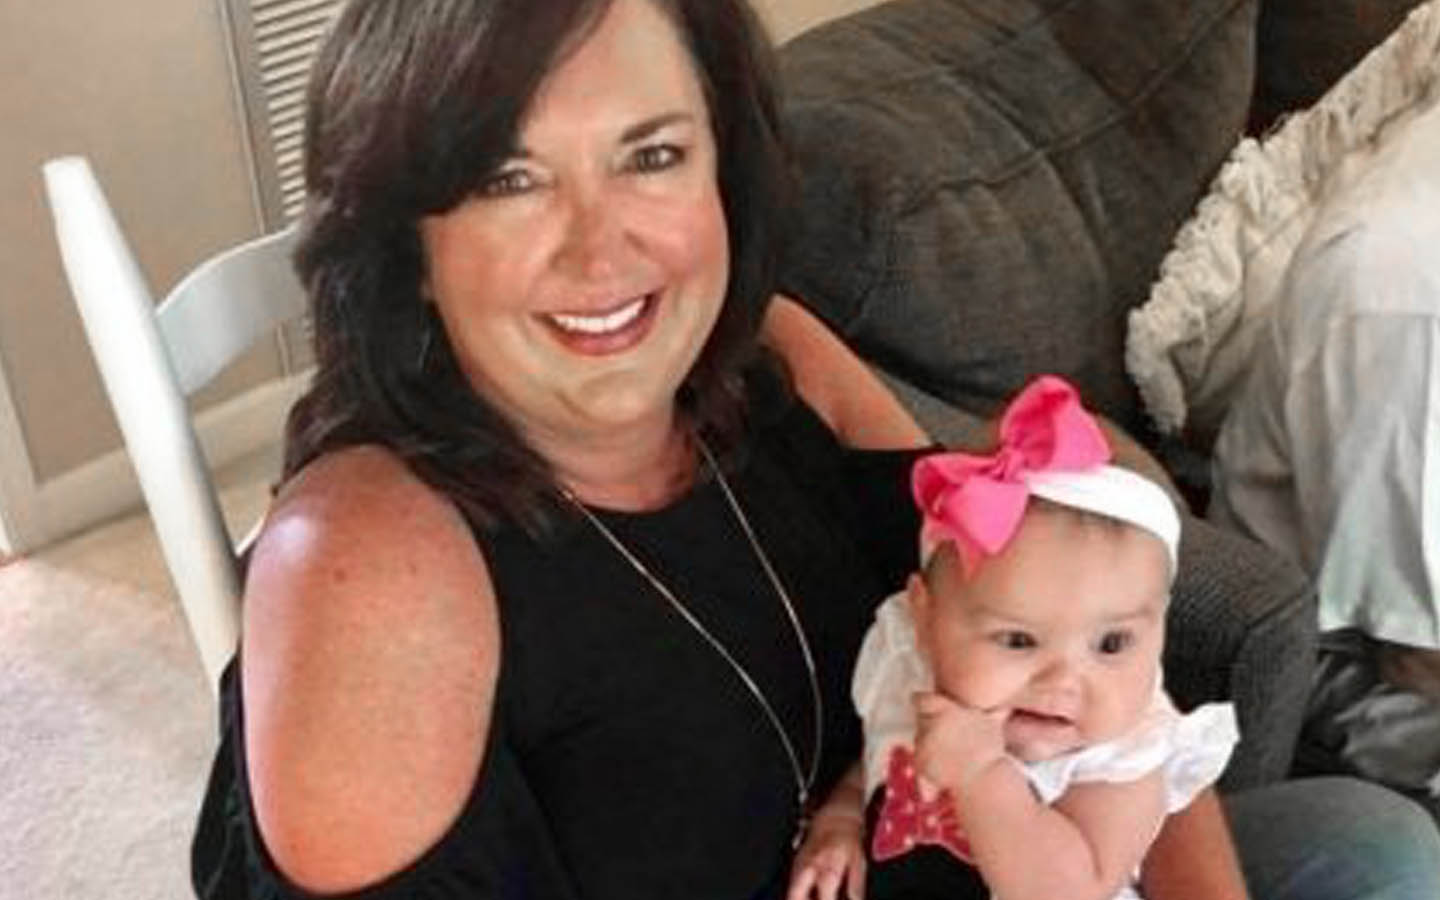 Uživatelka implantátu Angie pózuje na fotografii s dítětem